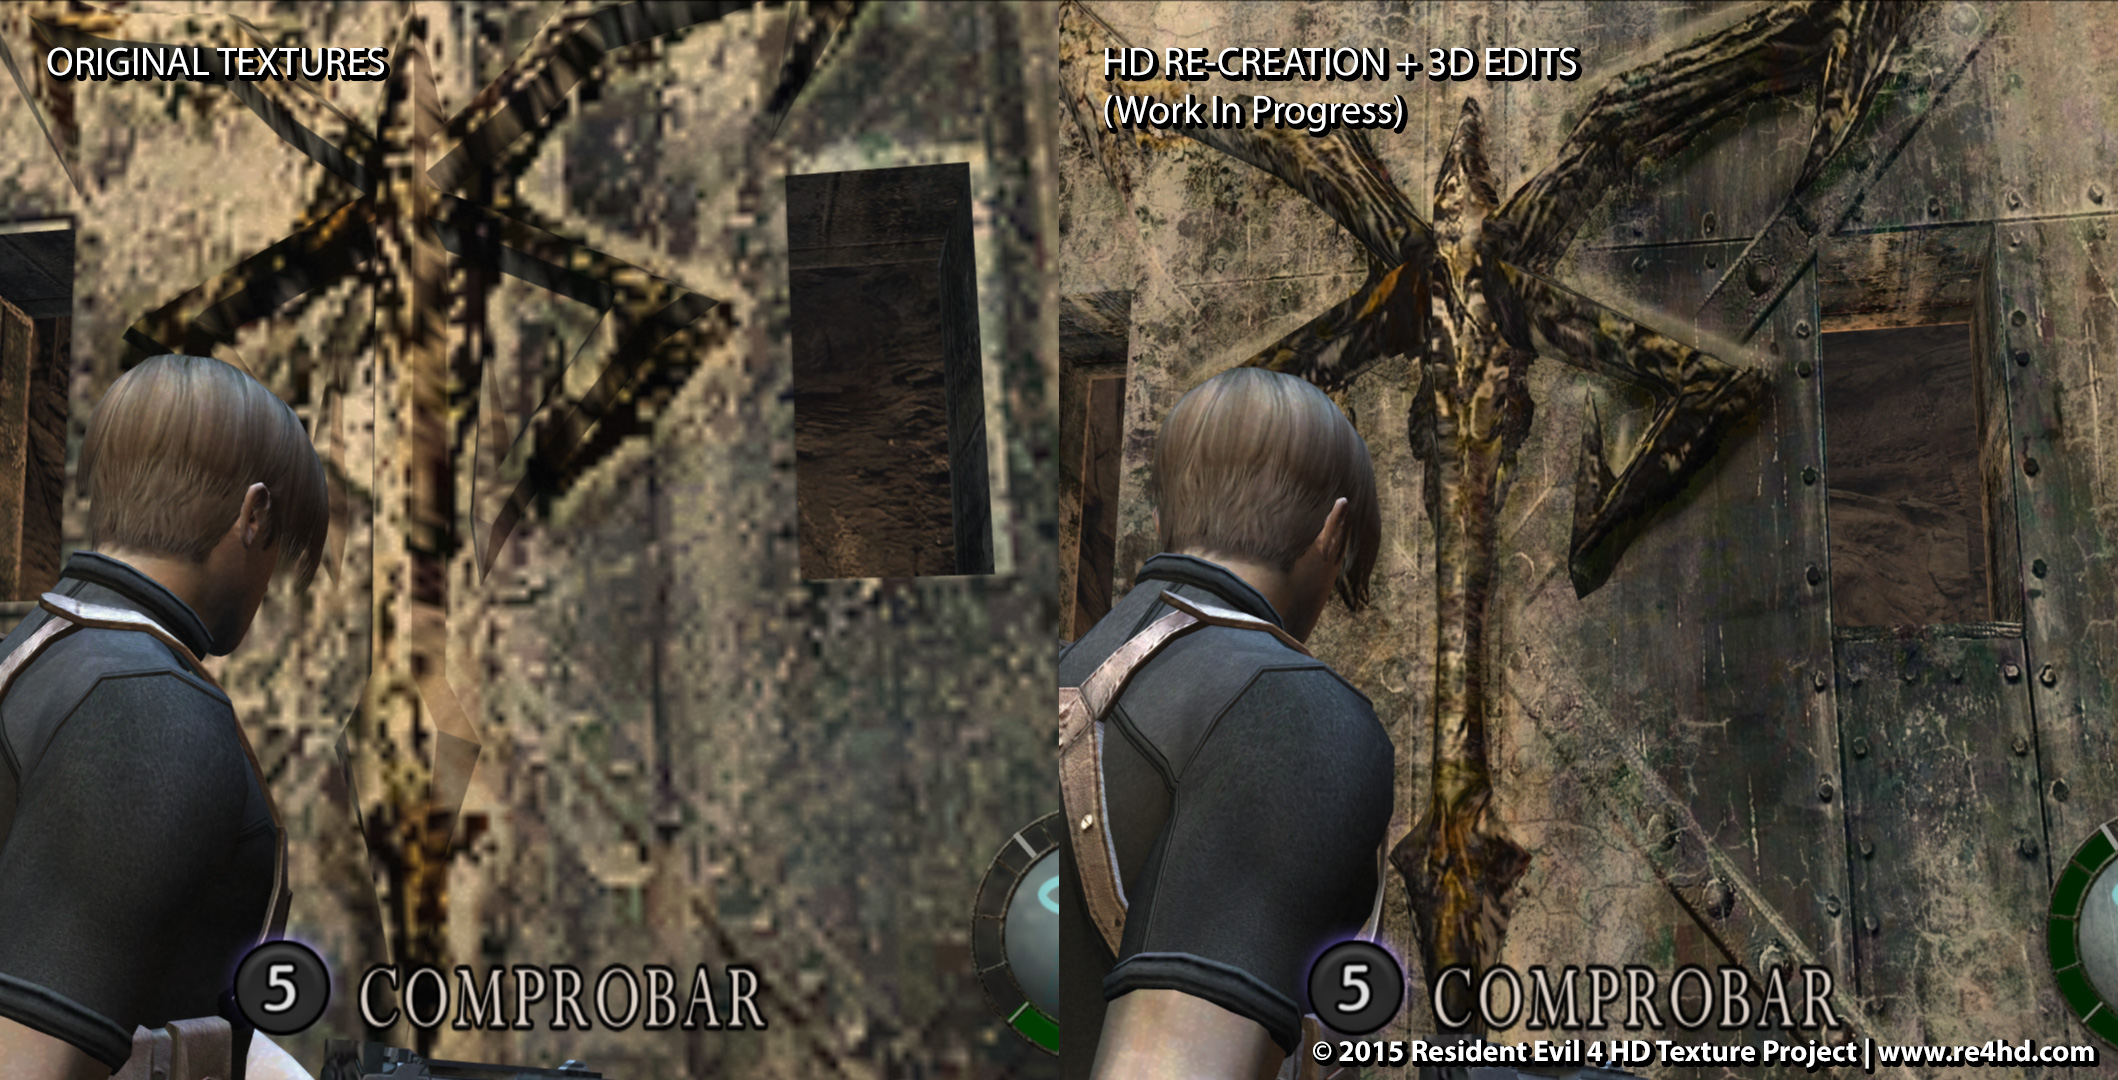 Resident Evil 4 HD - это фанатская разработка, цель которой